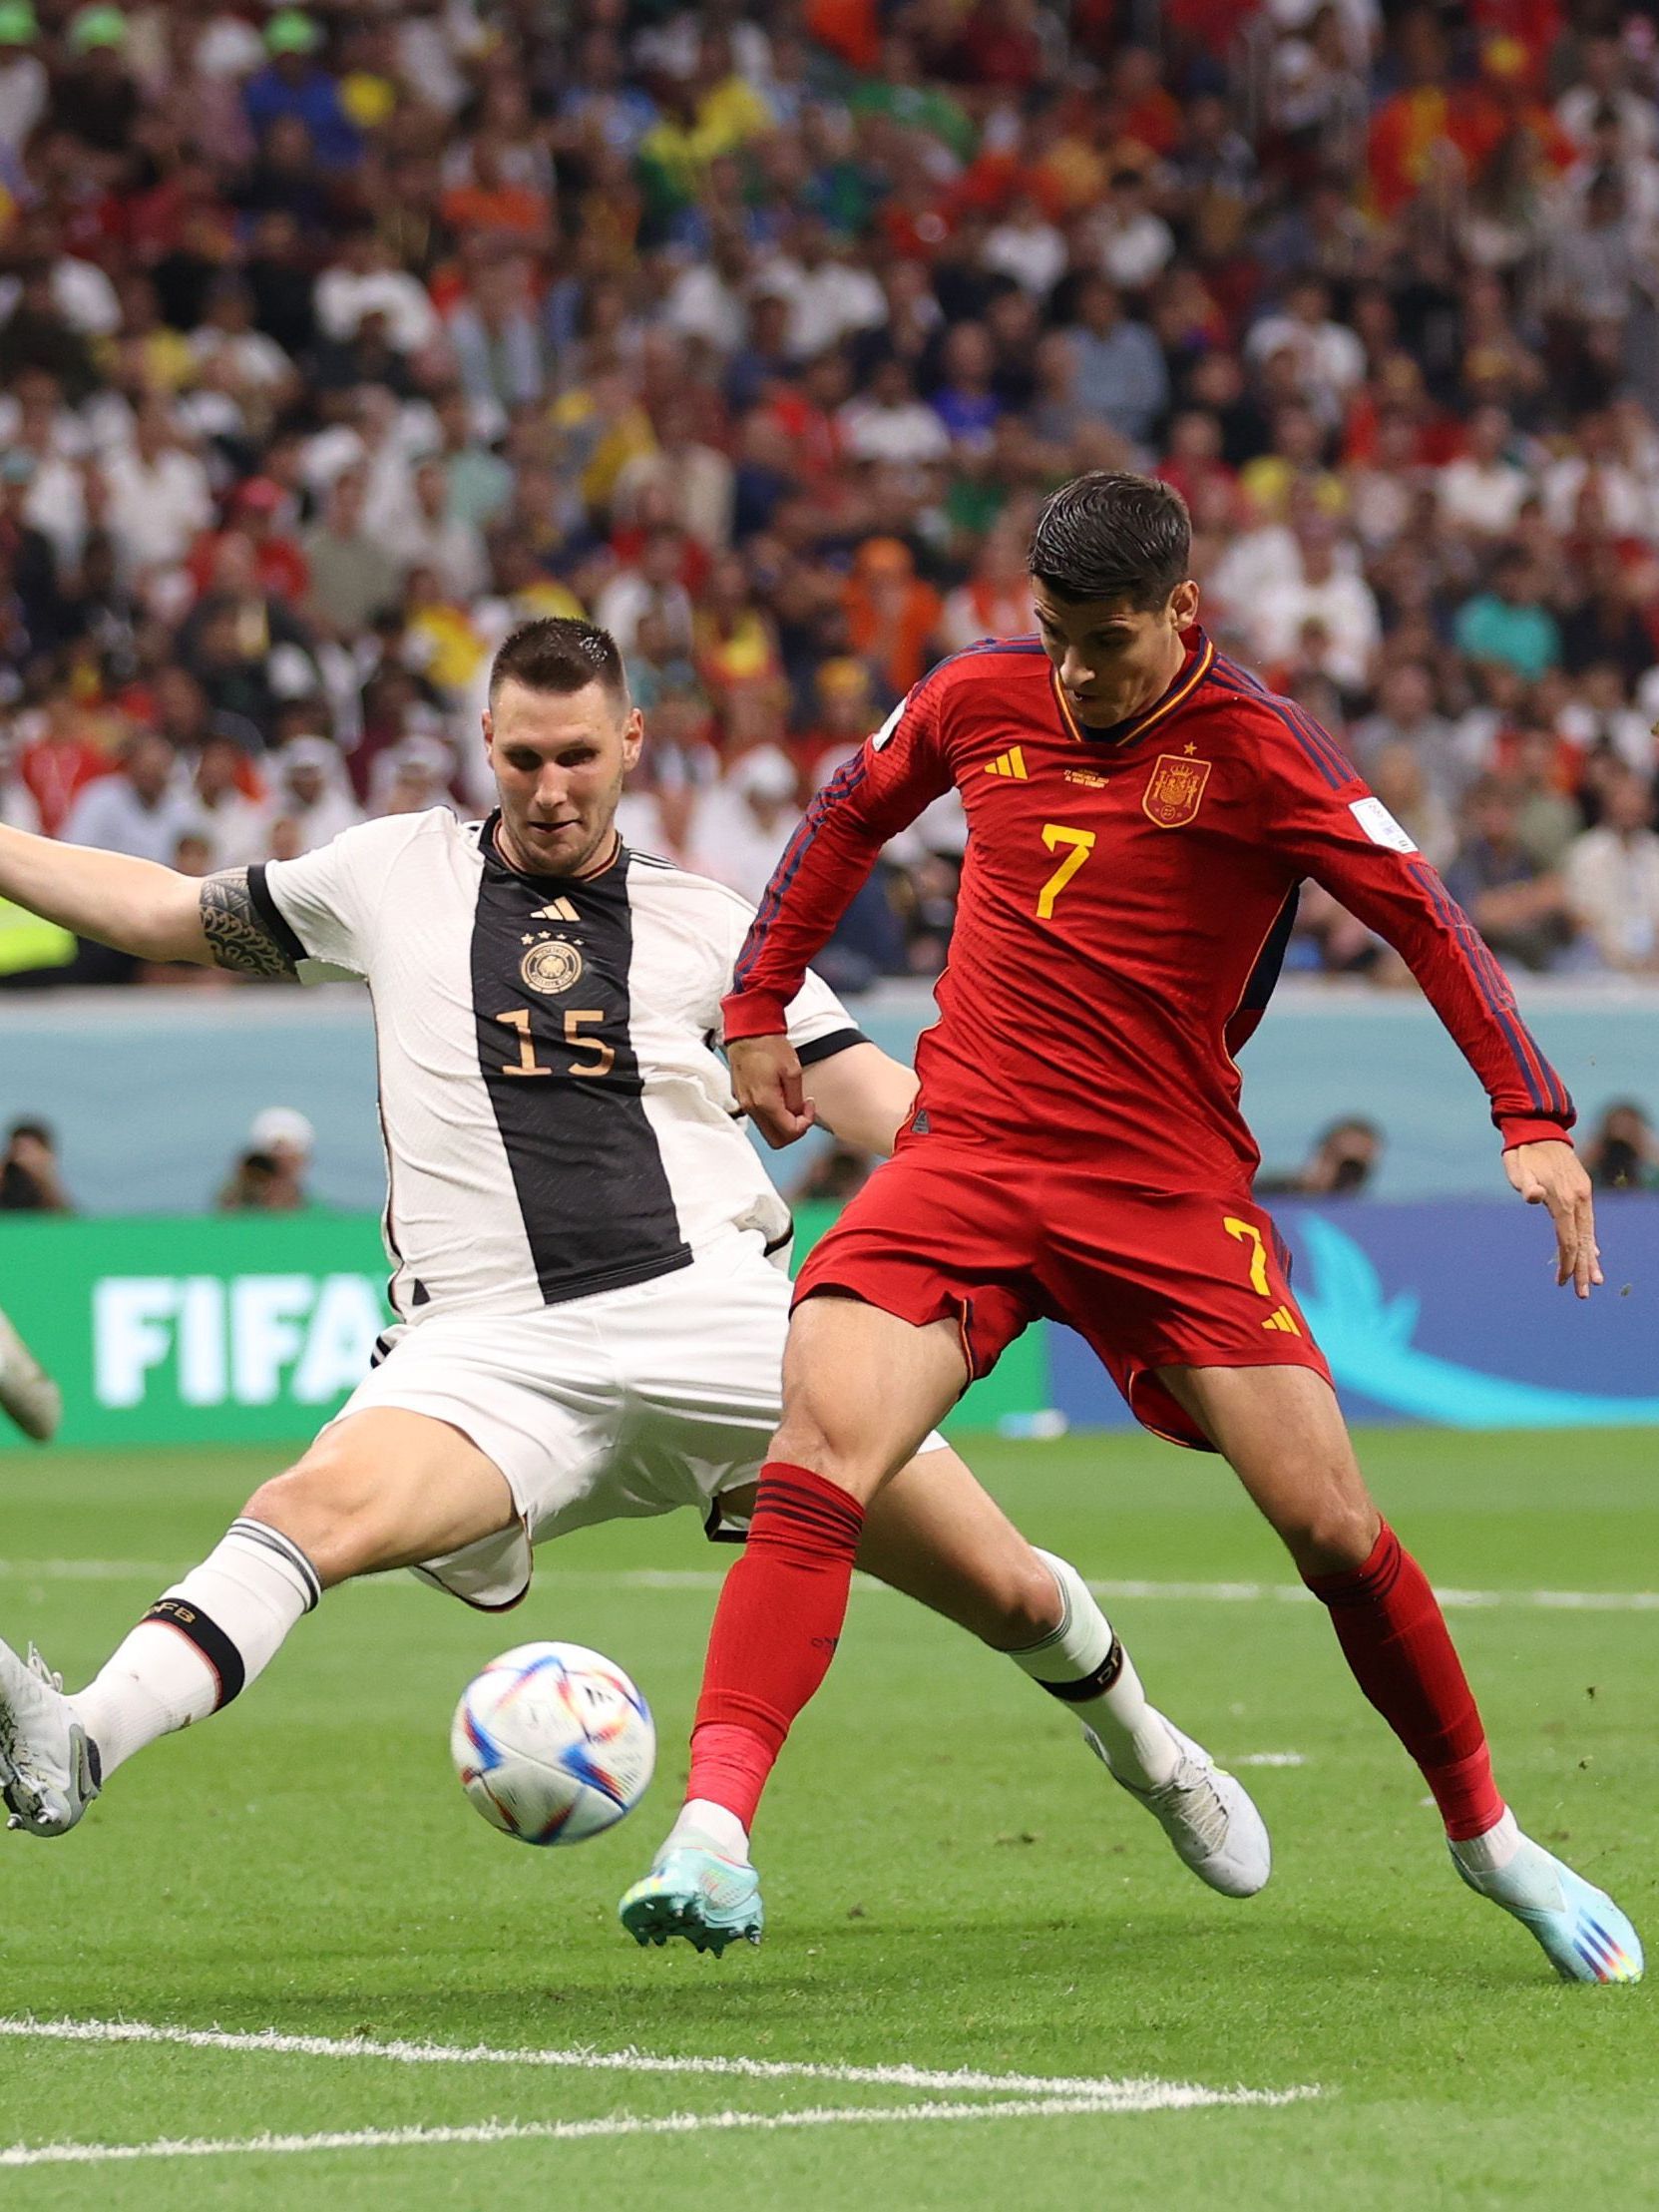 <strong>WM 2022, 2. Spieltag, Spanien - Deutschland 1:1</strong><br>Zum letzten bedeutsamen Aufeinandertreffen kam es erst vor rund anderthalb Jahren in Katar. Die Ausgangslage hätte für beide Teams verschiedener kaum sein können: Die Flick-Elf musste am ersten Spieltag einen Rückschlag gegen Japan hinnehmen, während Spanien die Costa-Ricaner mit 7:0 überrollte. Gegen Deutschland gelang ebenfalls der erste Treffer: Morata netzte zum 1:0 ein ...